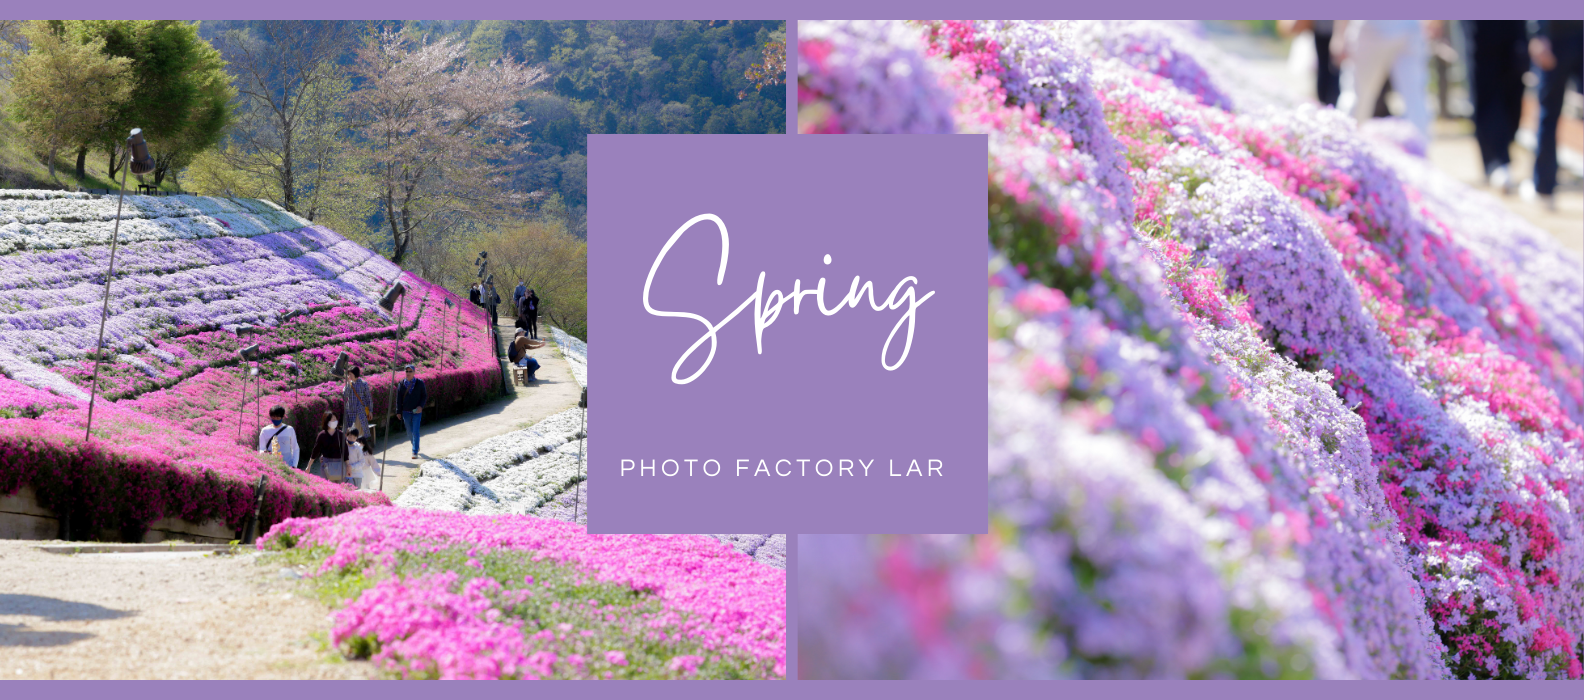 姫路の有名な芝桜スポット、ヤマサ蒲鉾の芝桜の写真